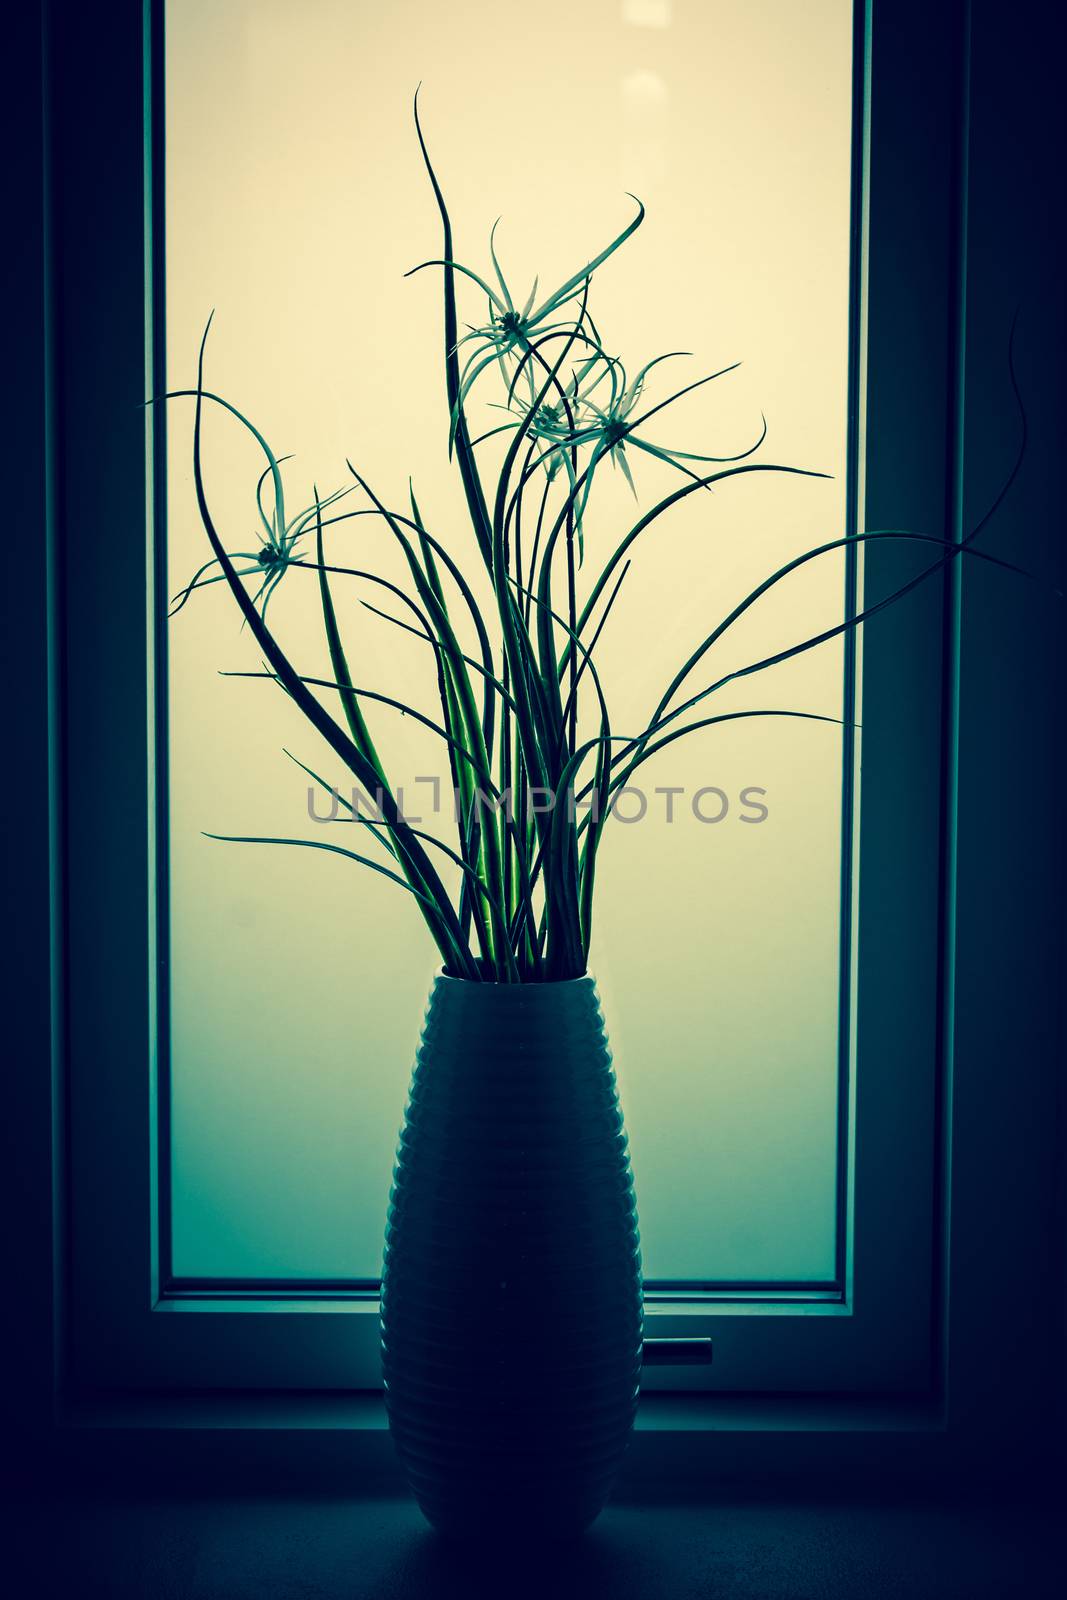 Flower silhouette in a bathroom window by Sportactive